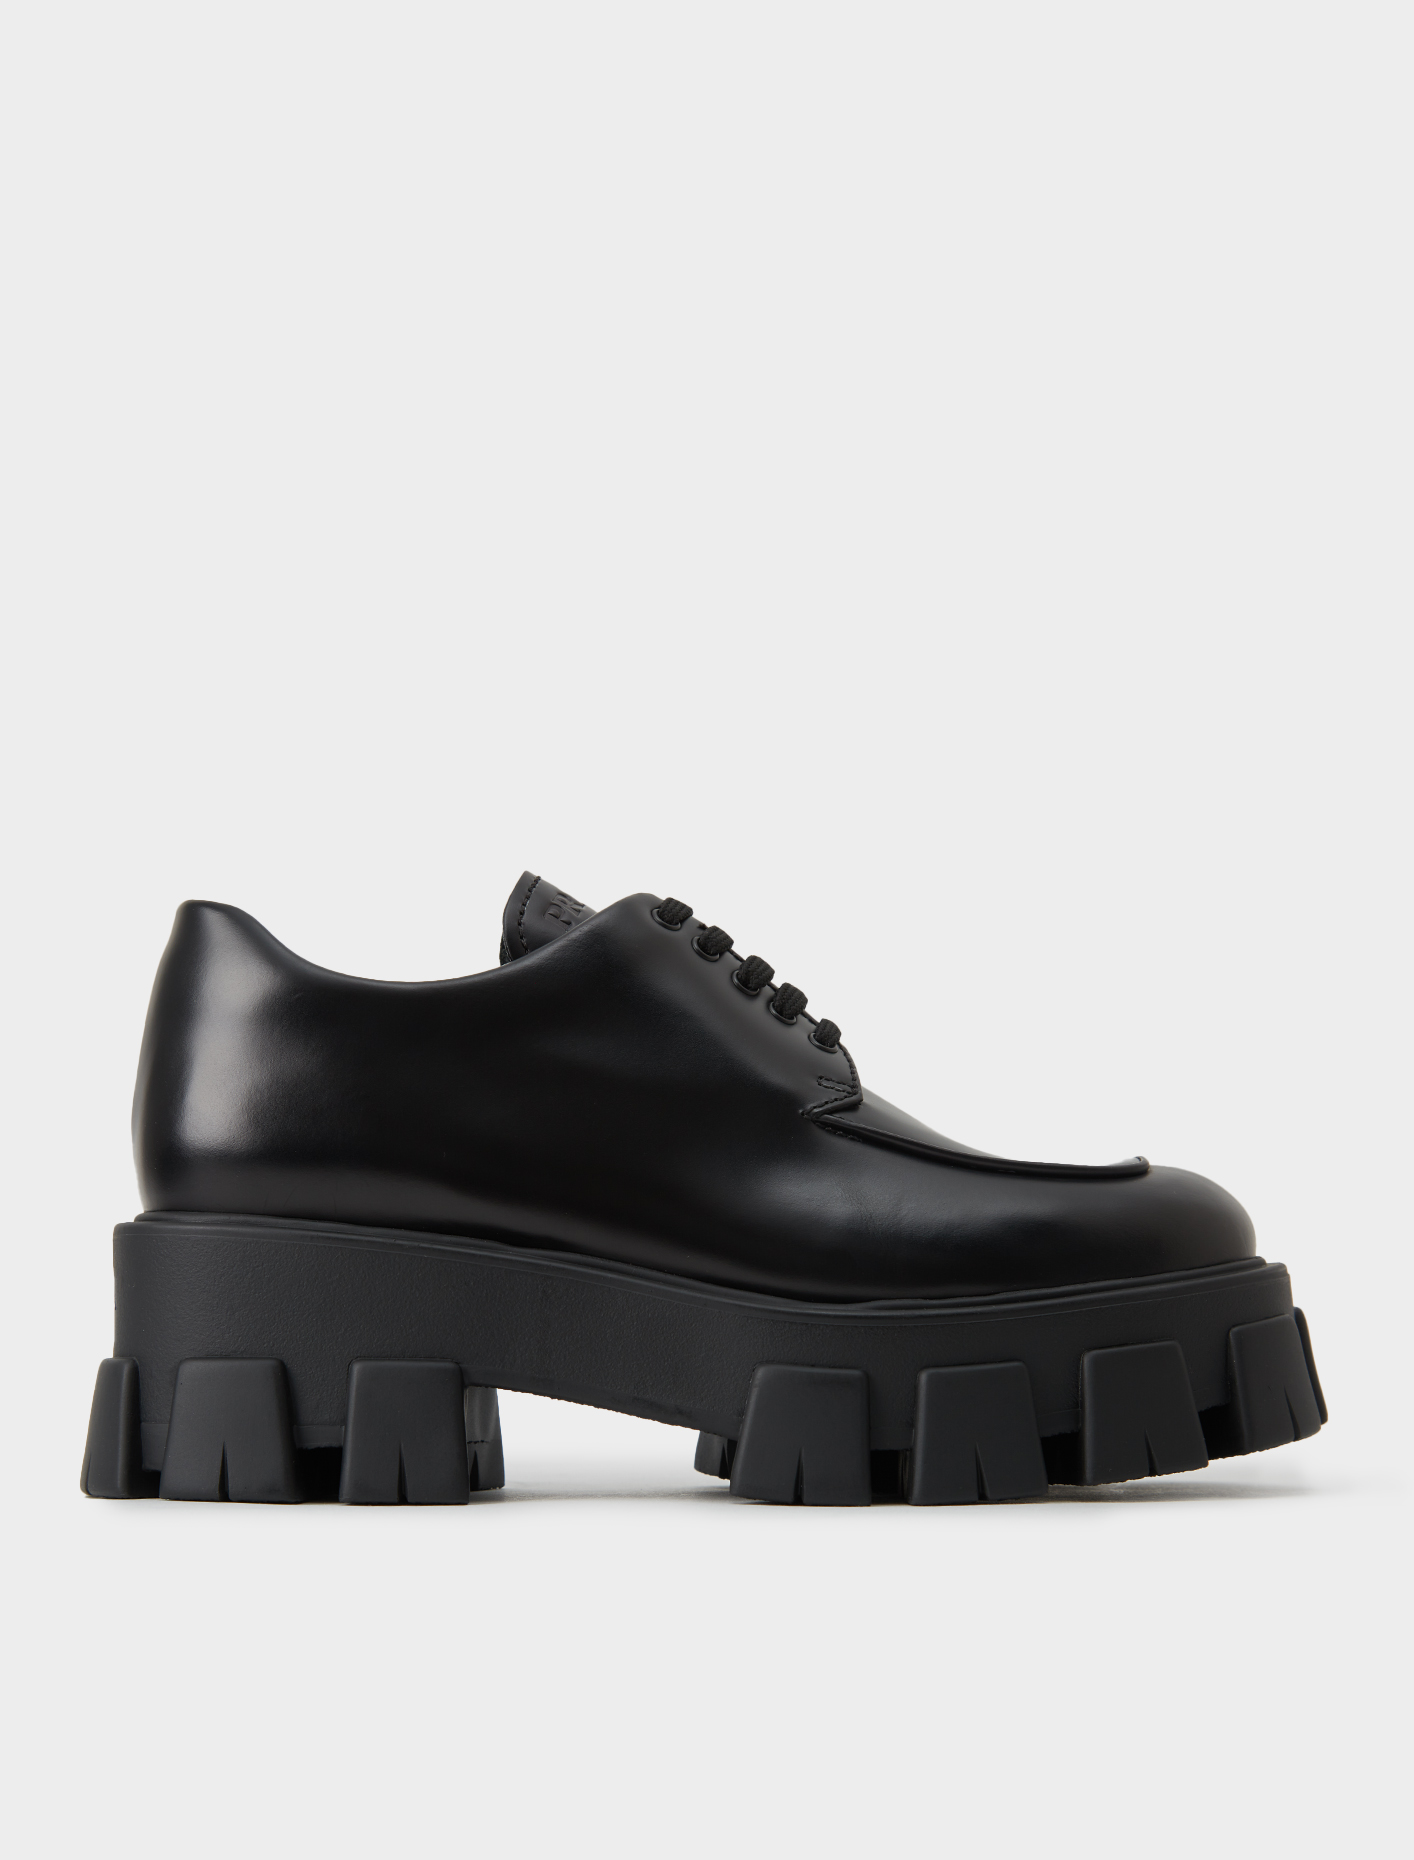 Prada Laced Shoe in Black | Voo Store Berlin | Worldwide Shipping